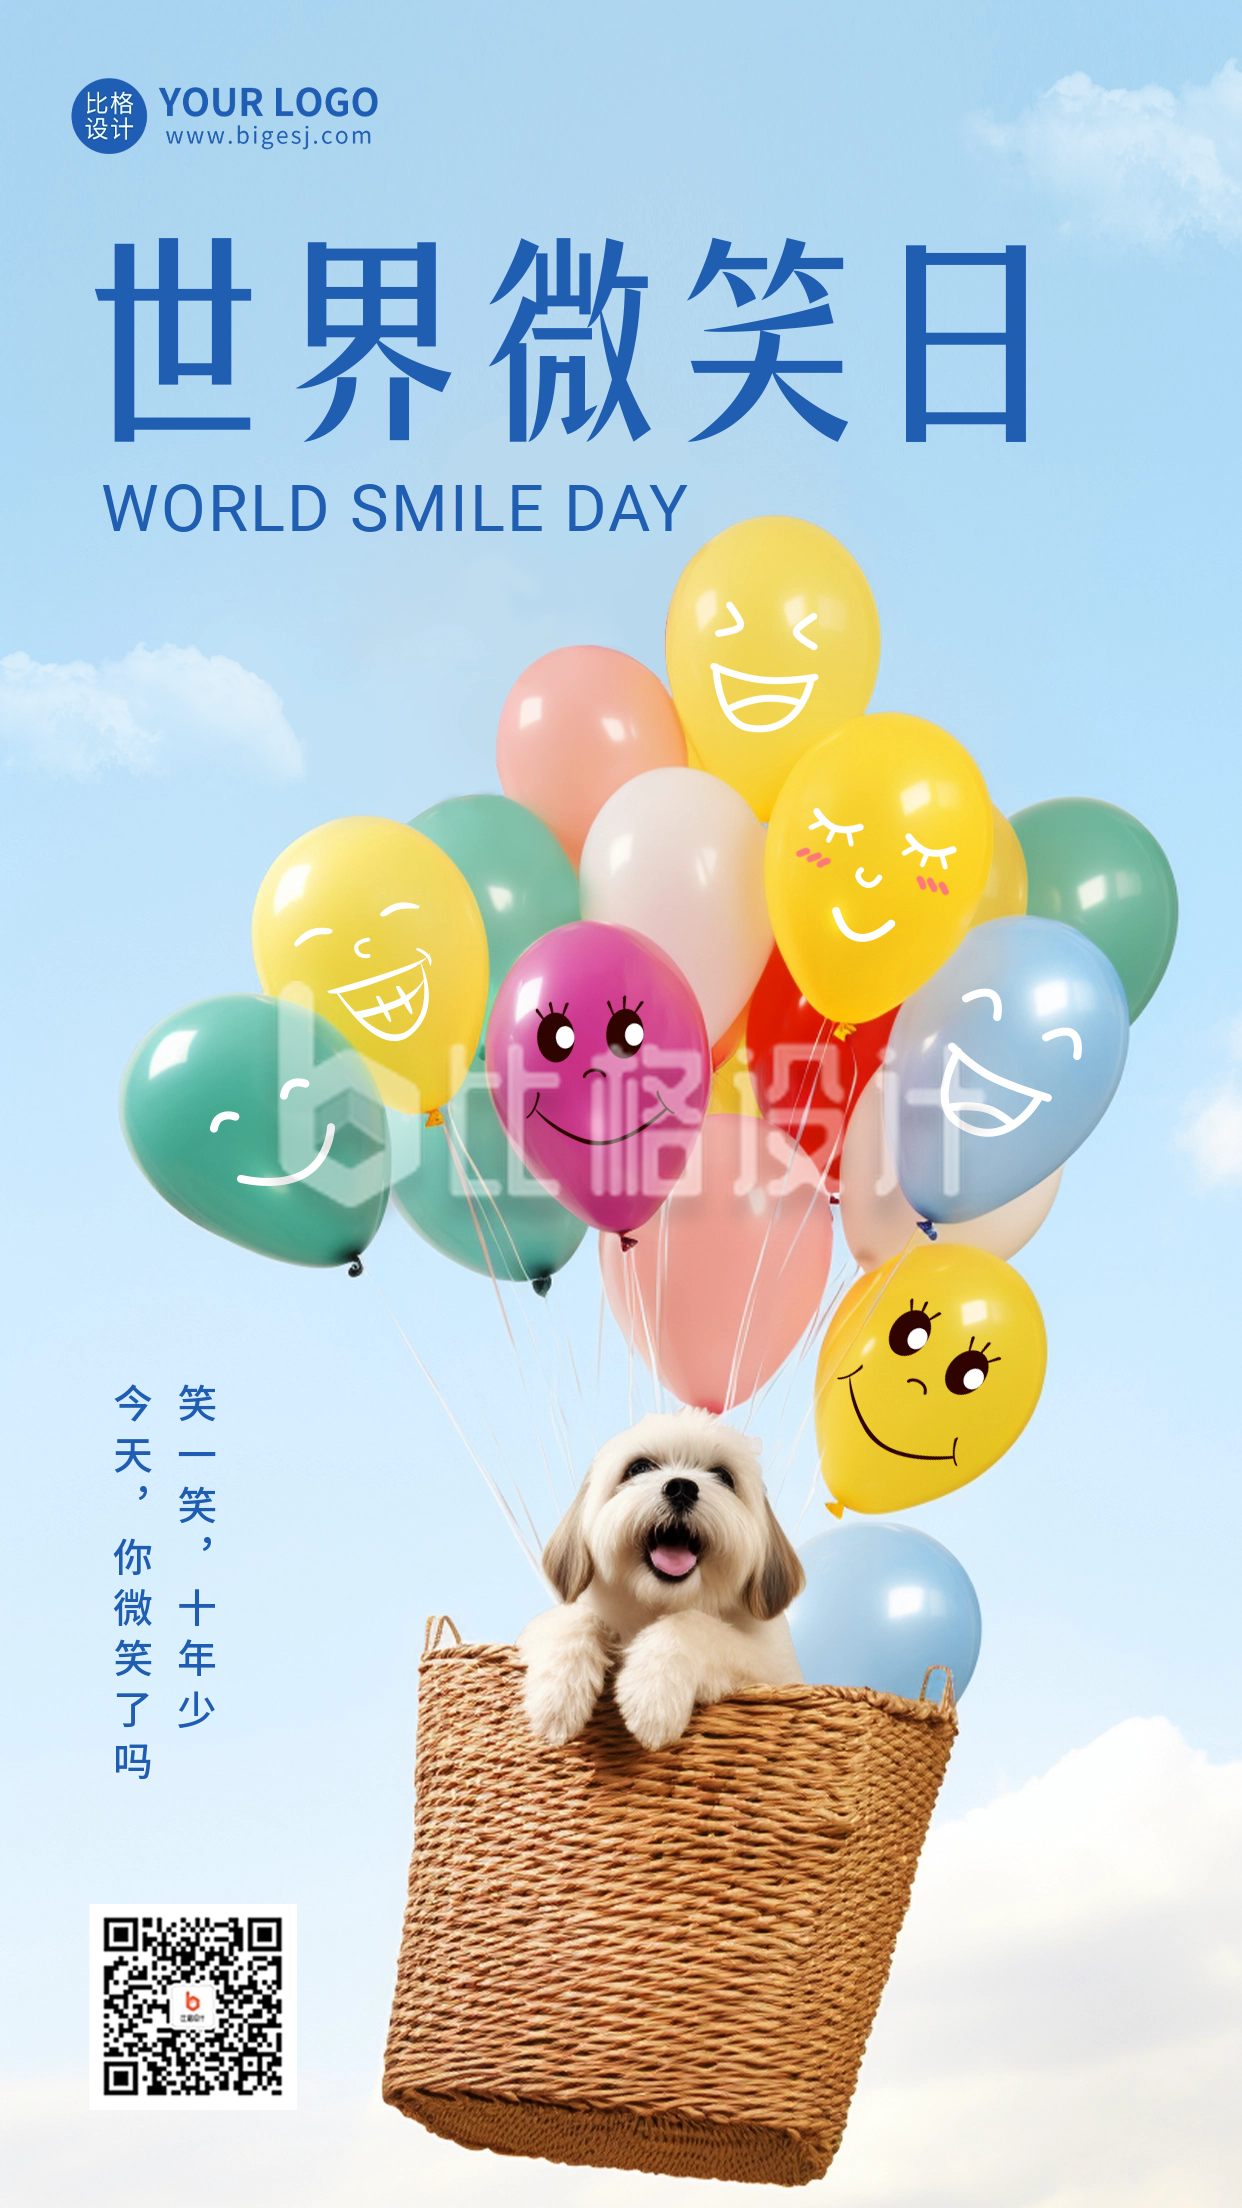 世界微笑日祝福手机海报